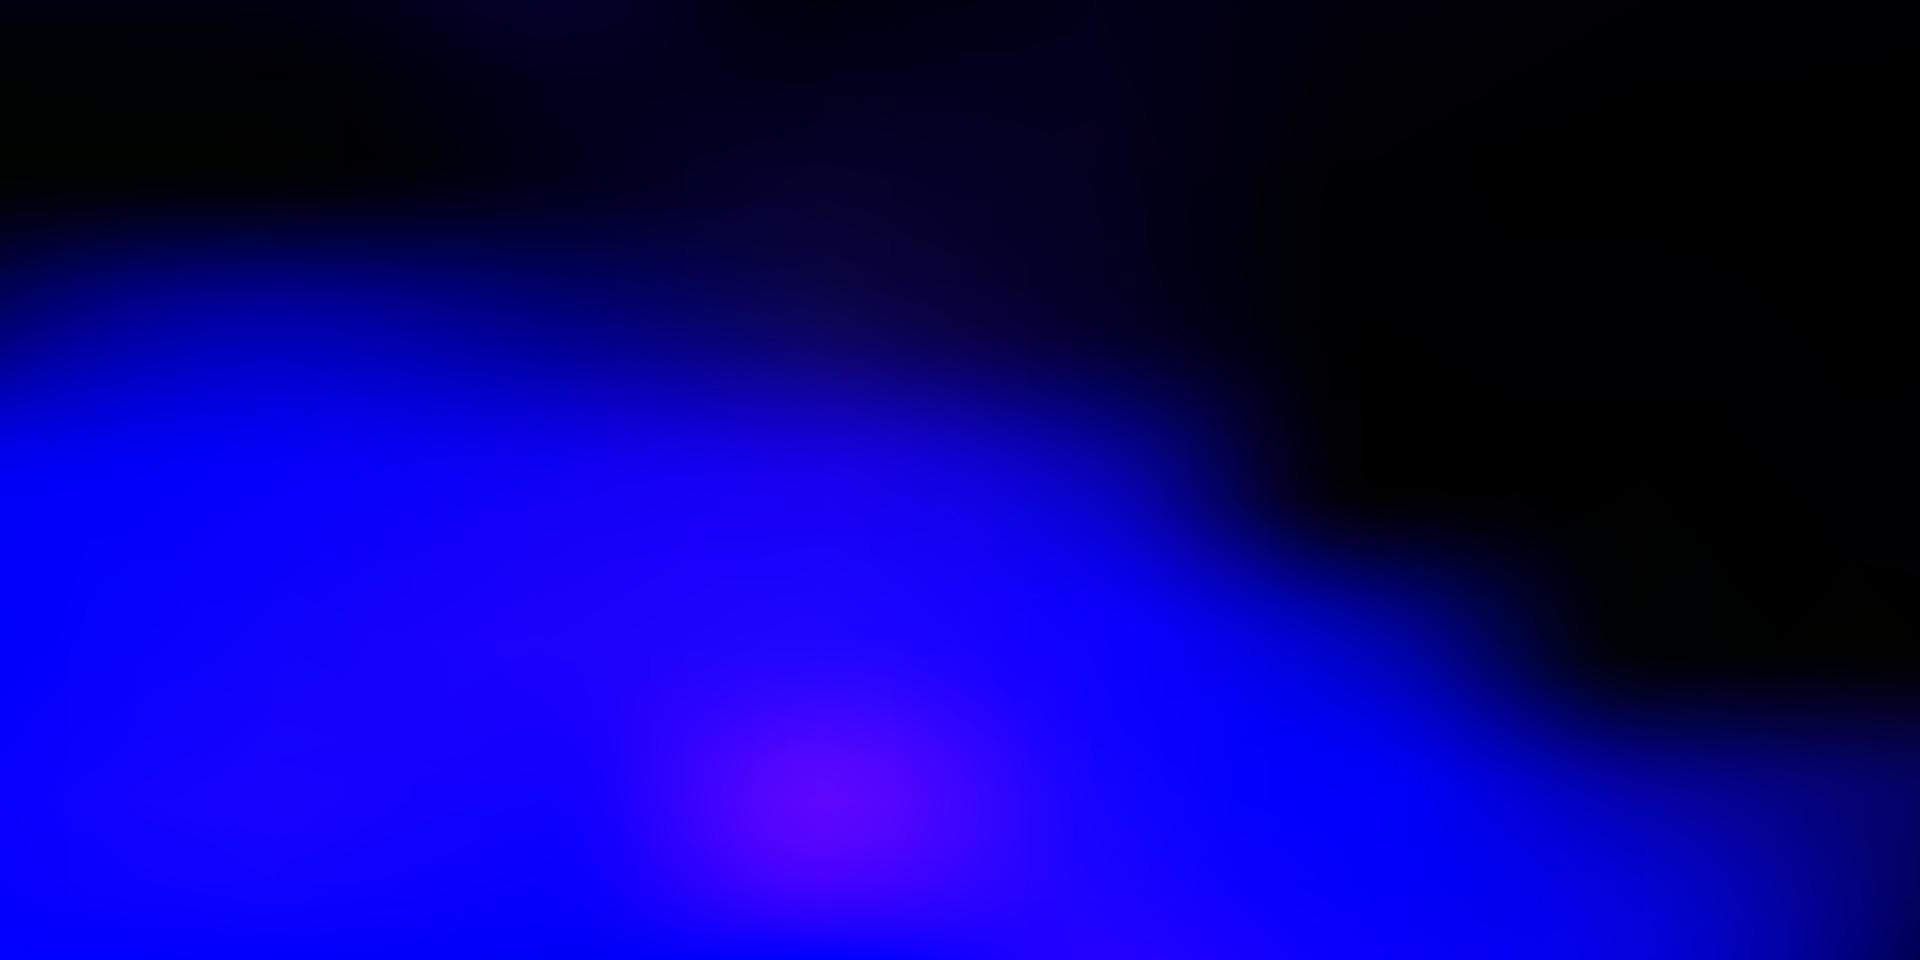 mörkrosa, blå vektor oskärpa bakgrund.